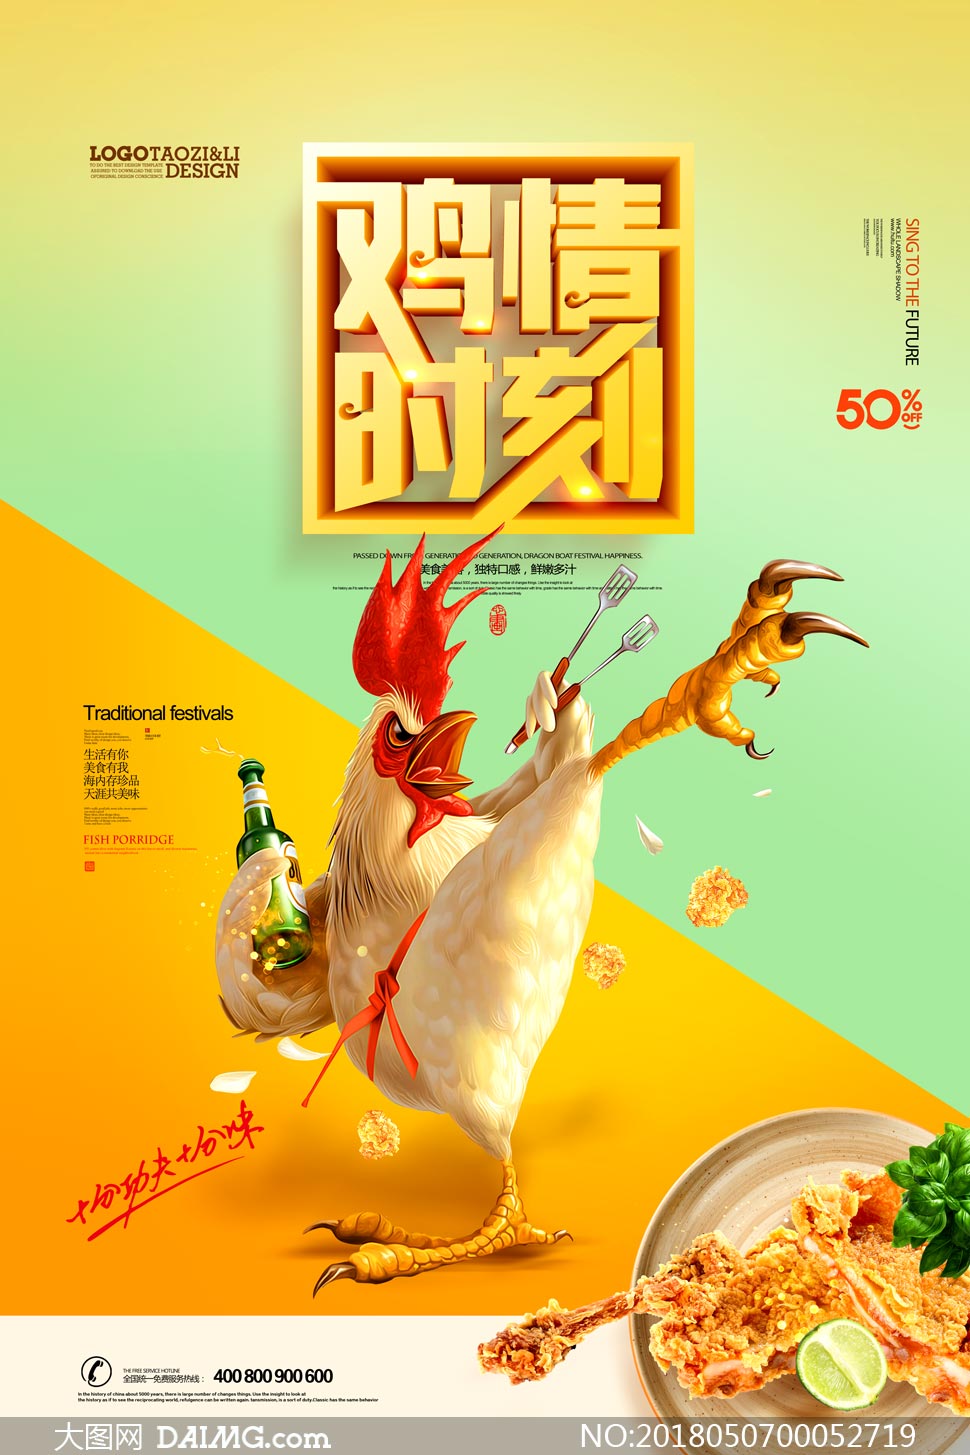 炸鸡美食宣传海报设计psd源文件